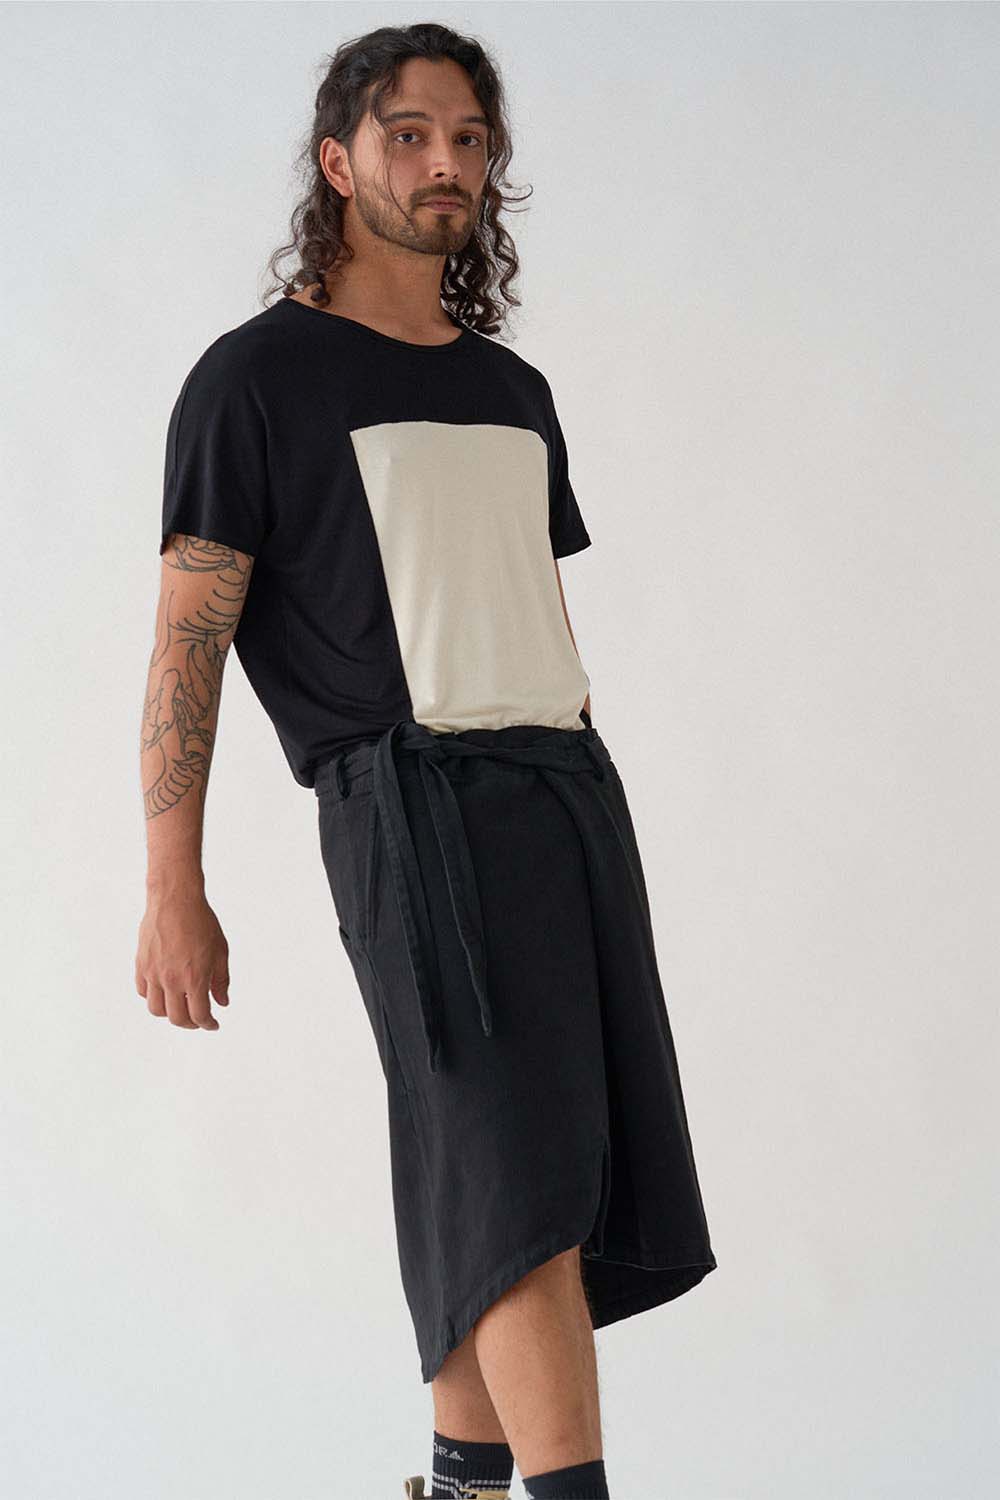 imagen  detalle del modelo con camiseta quadrilaterus negro y blanco y falda gris ceniza